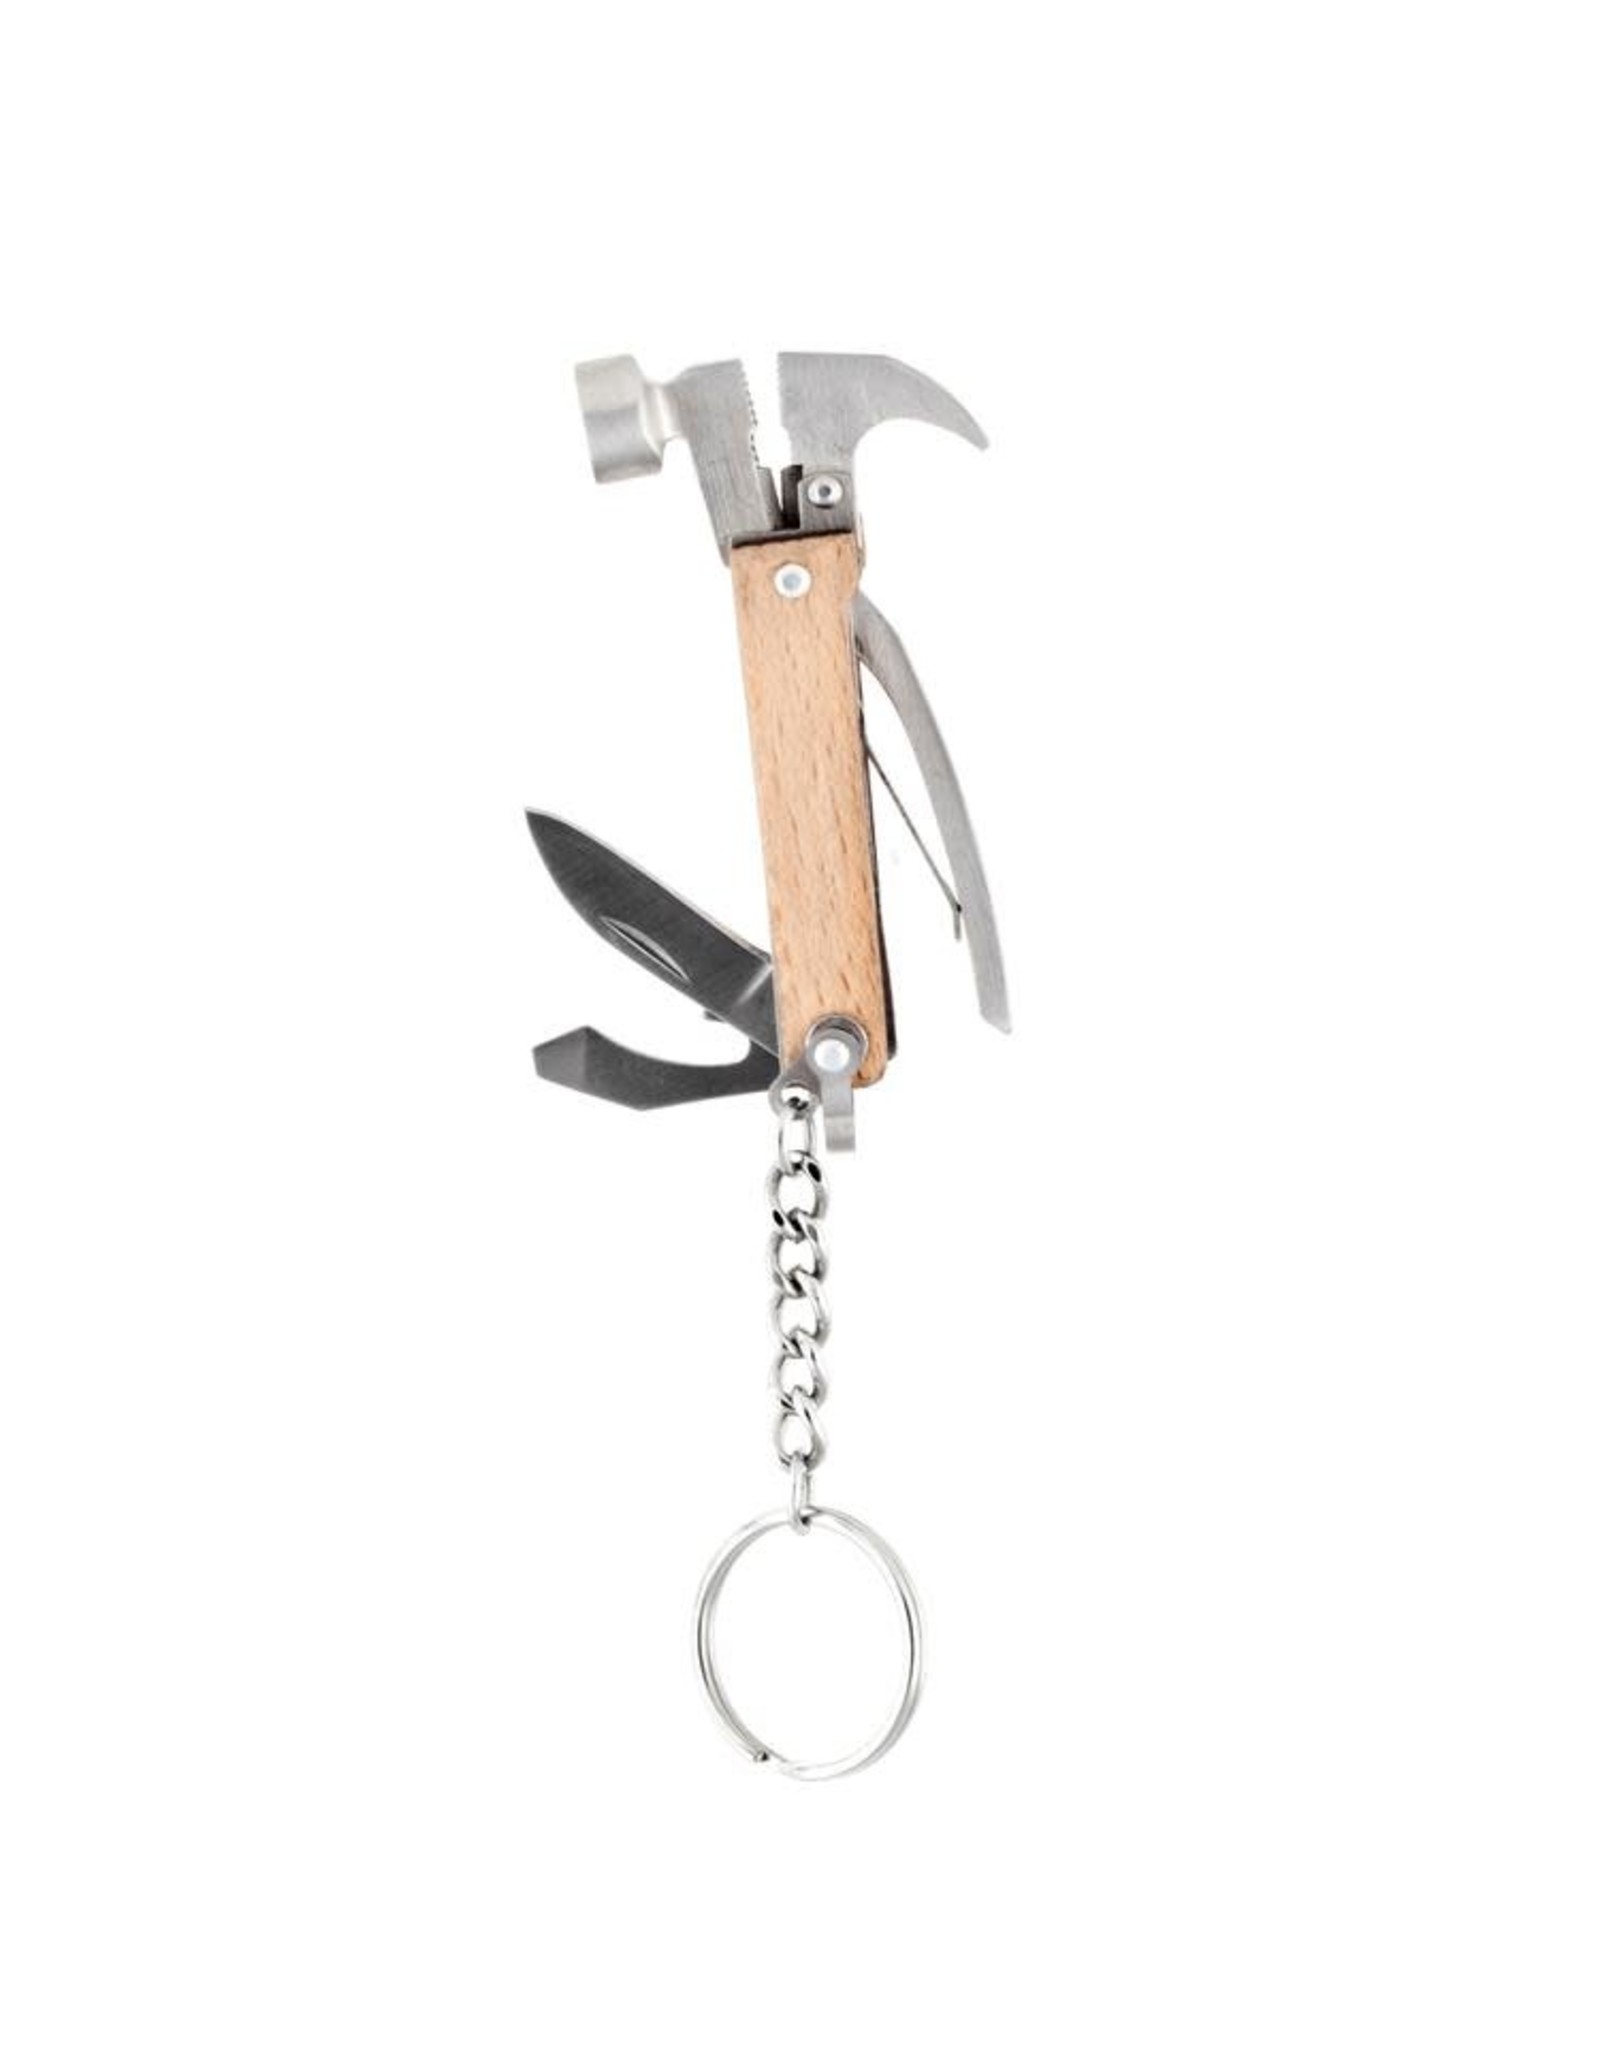 Kikkerland Mini Wood Hammer Multi Tool